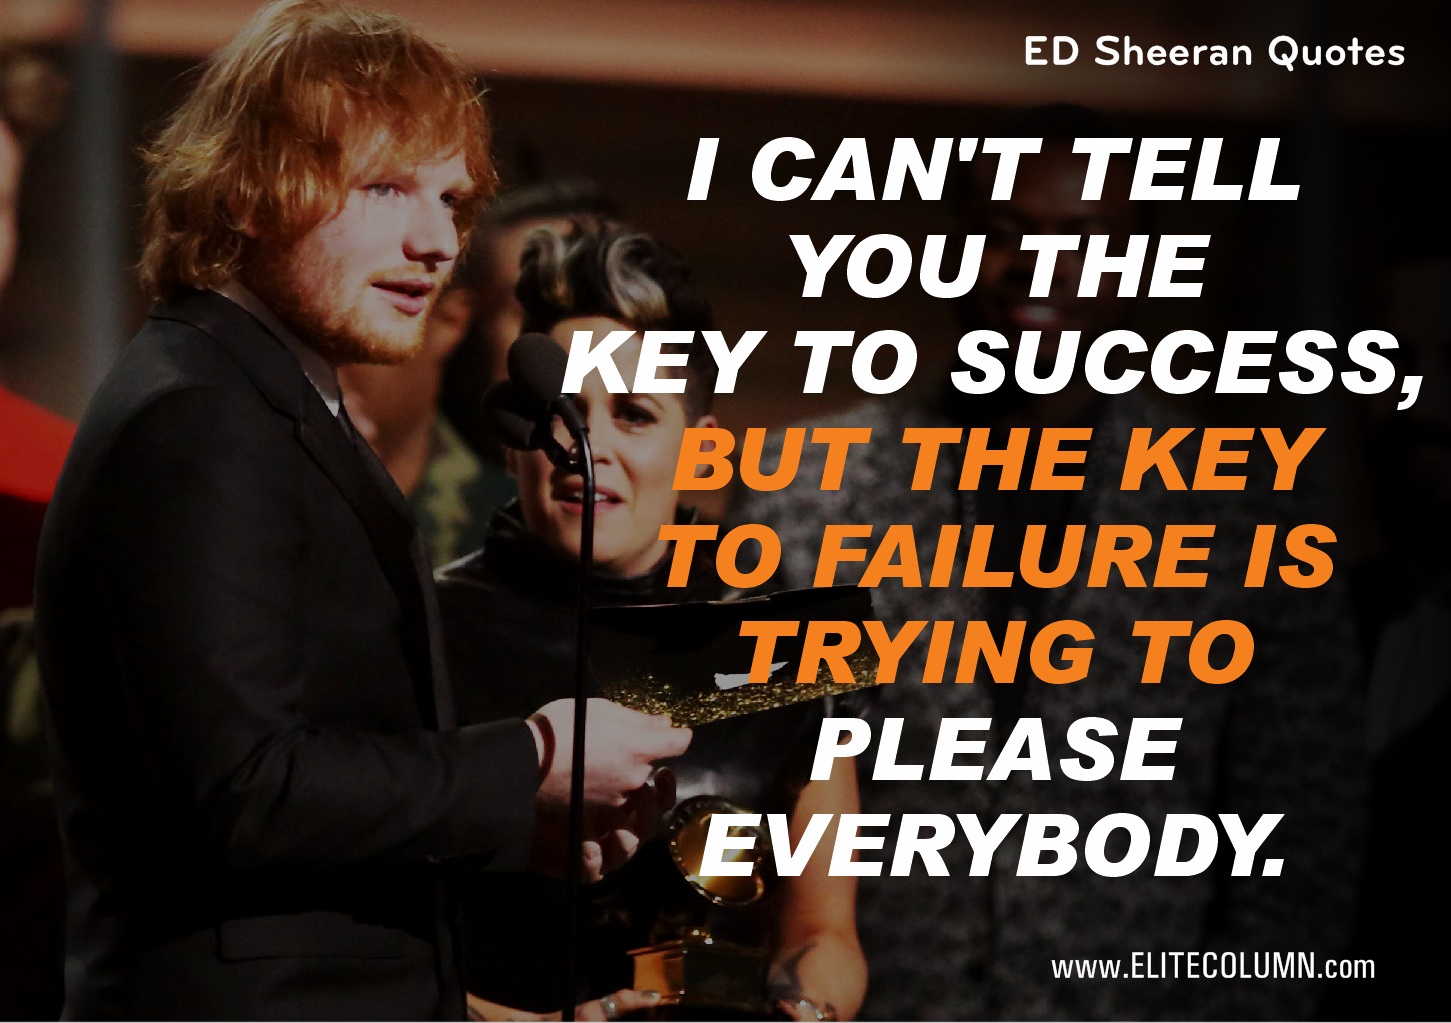 Ed Sheeran Quotes (5)